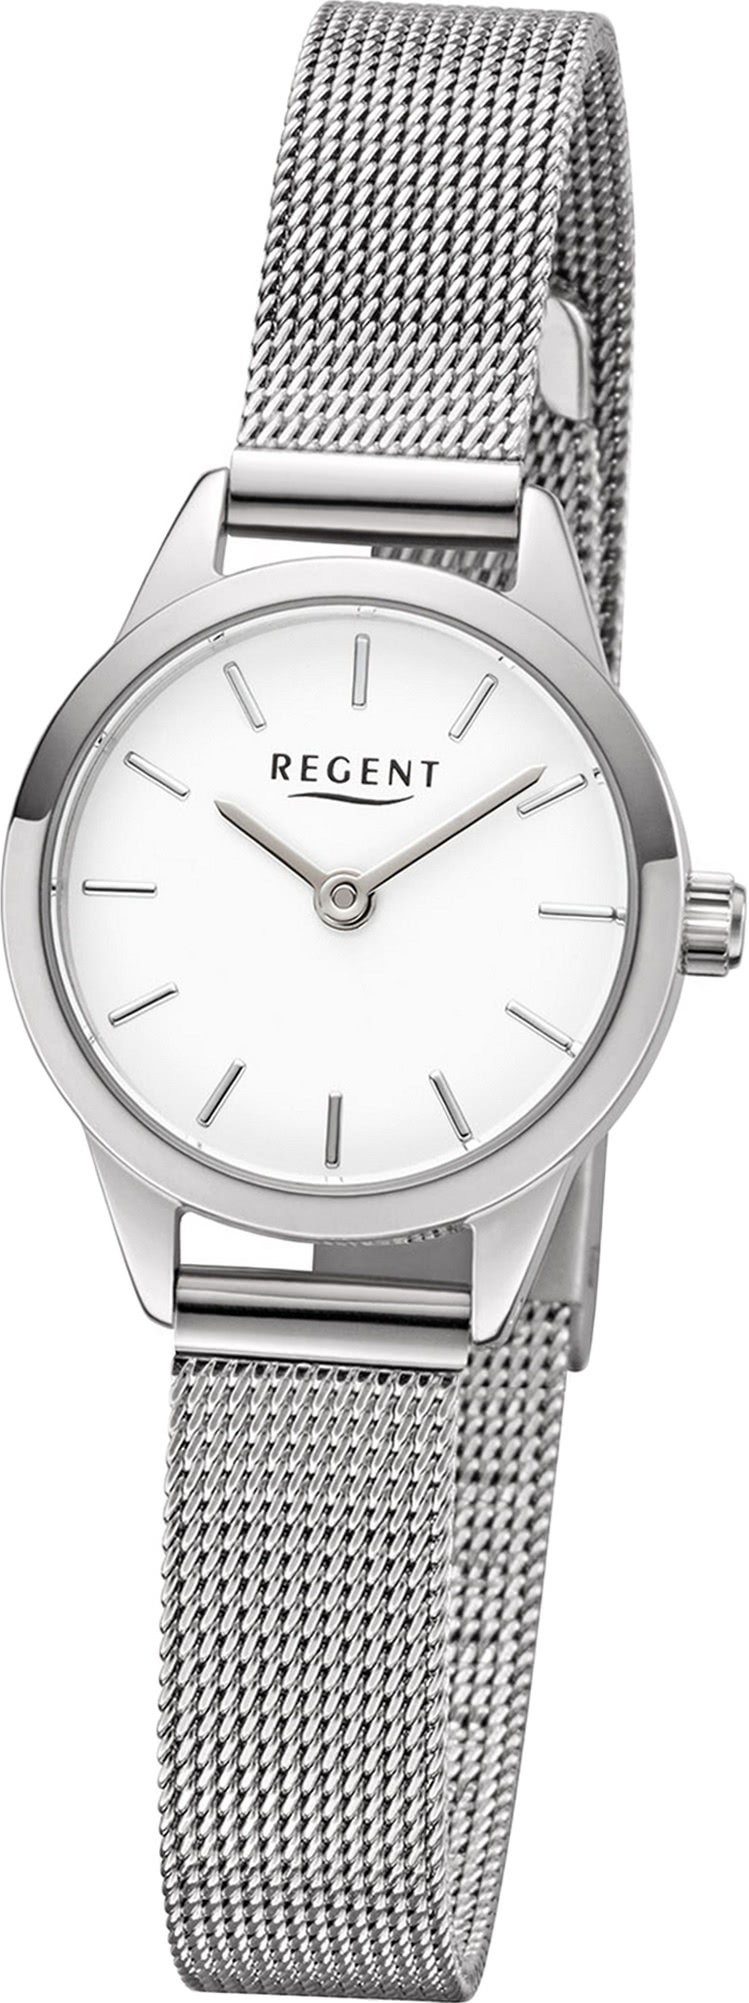 Regent Quarzuhr Regent Metall Damen Uhr F-1165 Analog, Damenuhr Metallarmband silber, rundes Gehäuse, klein (ca. 18mm)